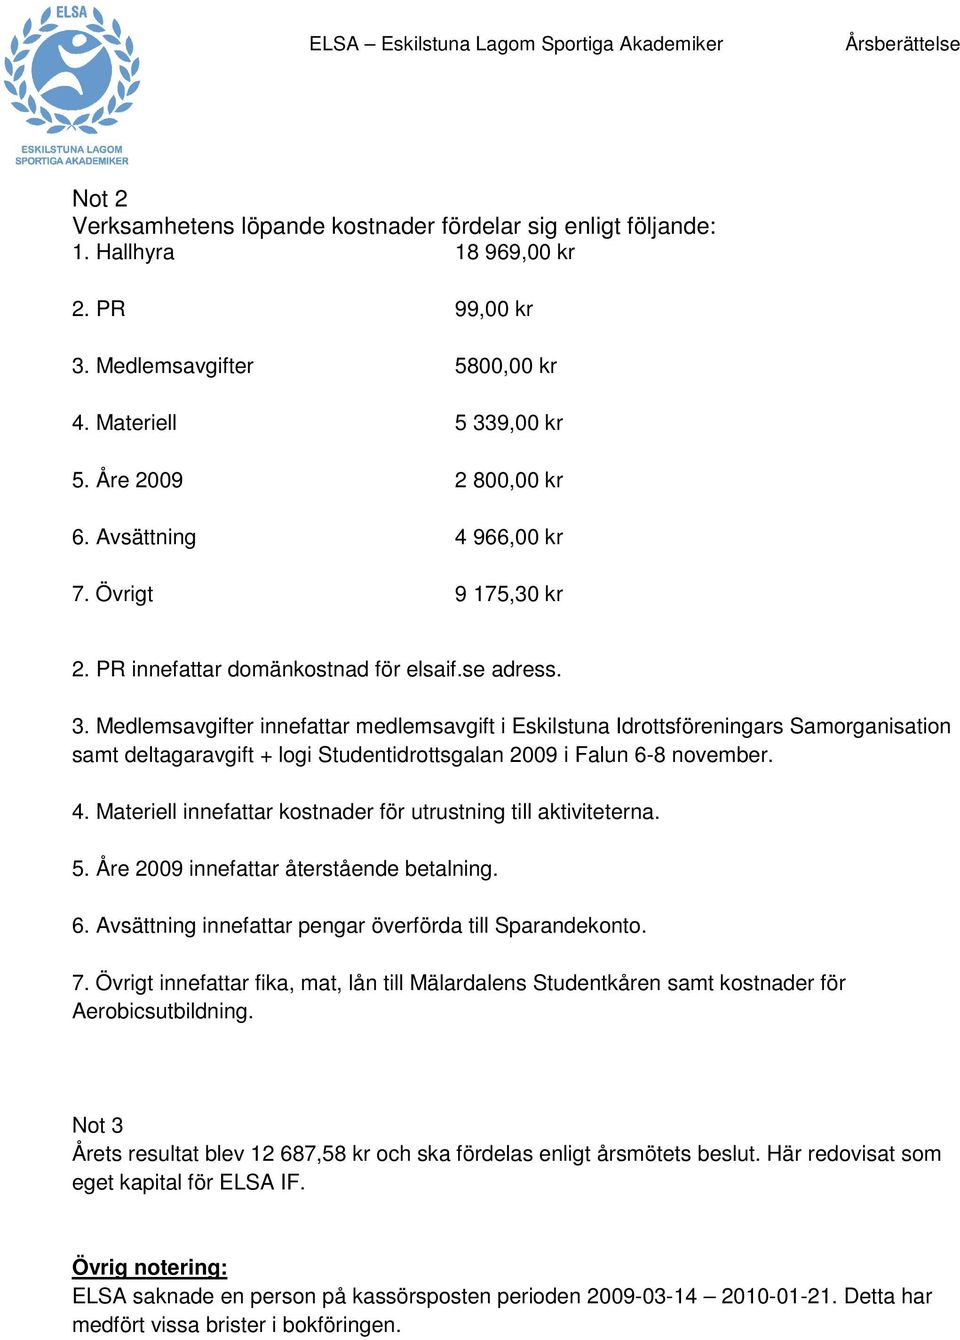 Medlemsavgifter innefattar medlemsavgift i Eskilstuna Idrottsföreningars Samorganisation samt deltagaravgift + logi Studentidrottsgalan 2009 i Falun 6-8 november. 4.